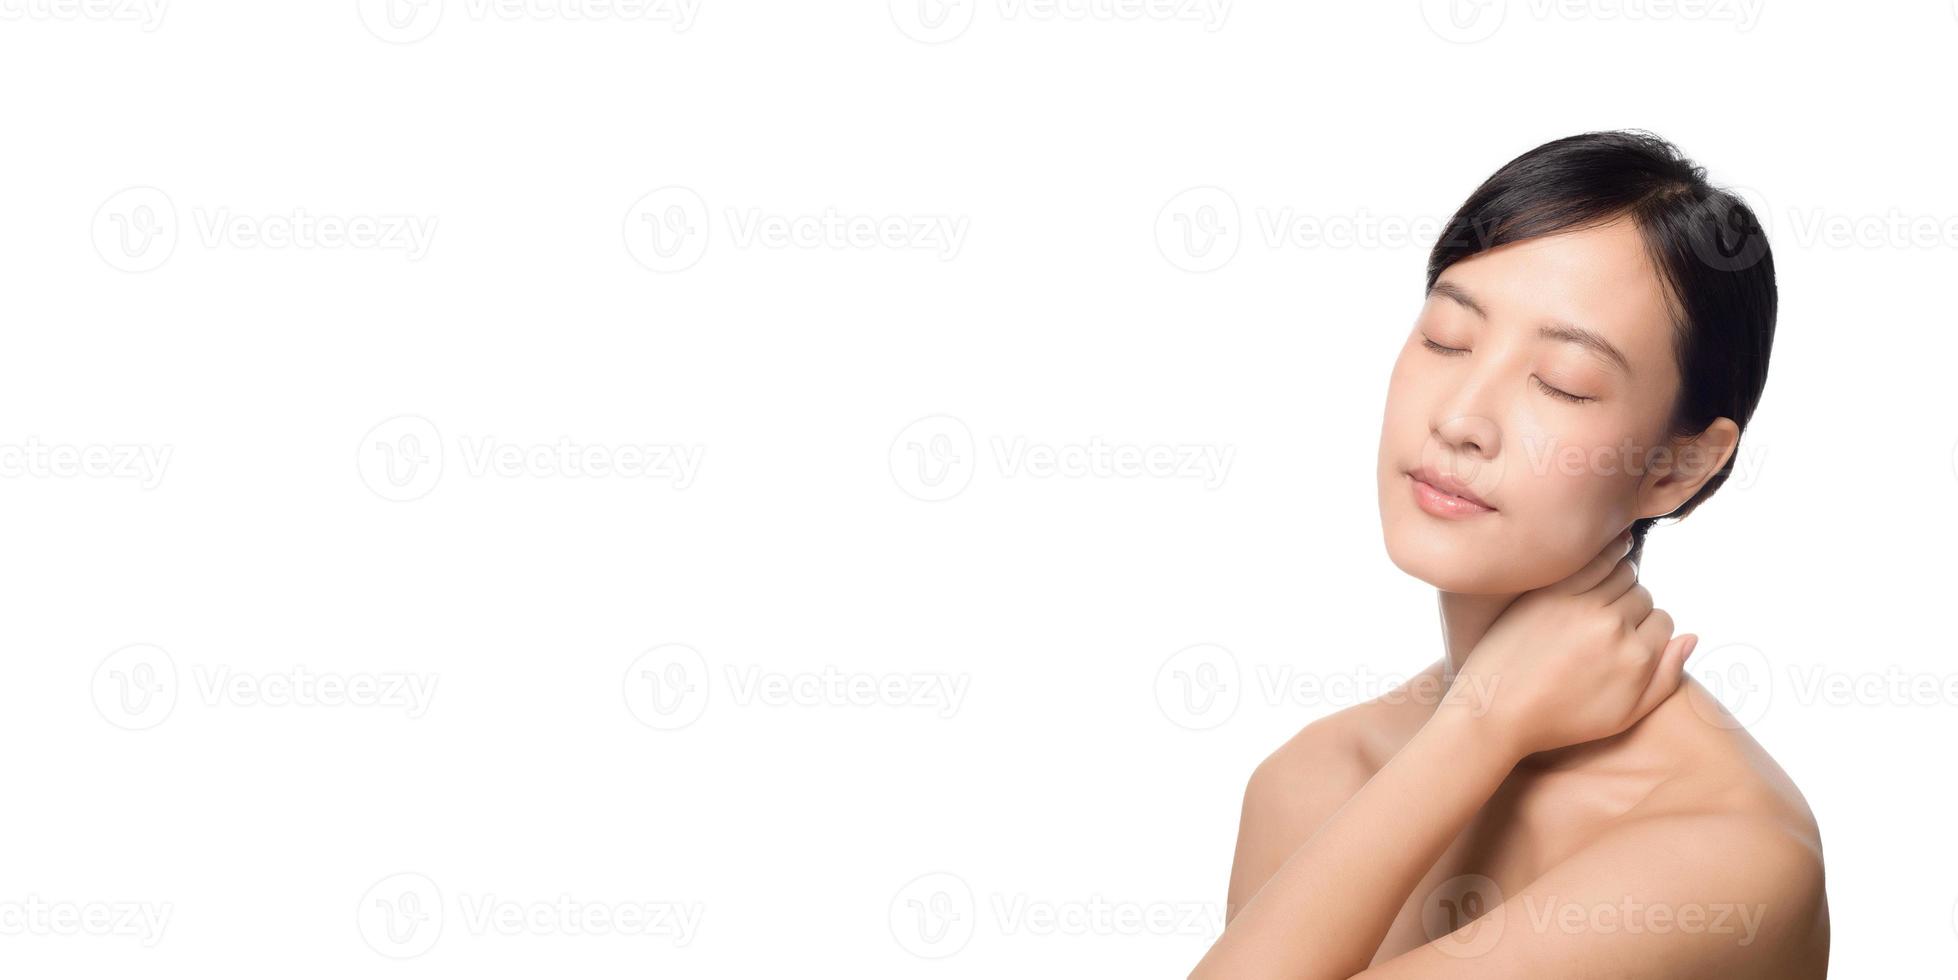 retrato da bela jovem mulher asiática limpo conceito de pele nua fresca com traçado de recorte. menina asiática beleza rosto skincare e saúde bem-estar, tratamento facial, maquiagem natural em fundo branco foto